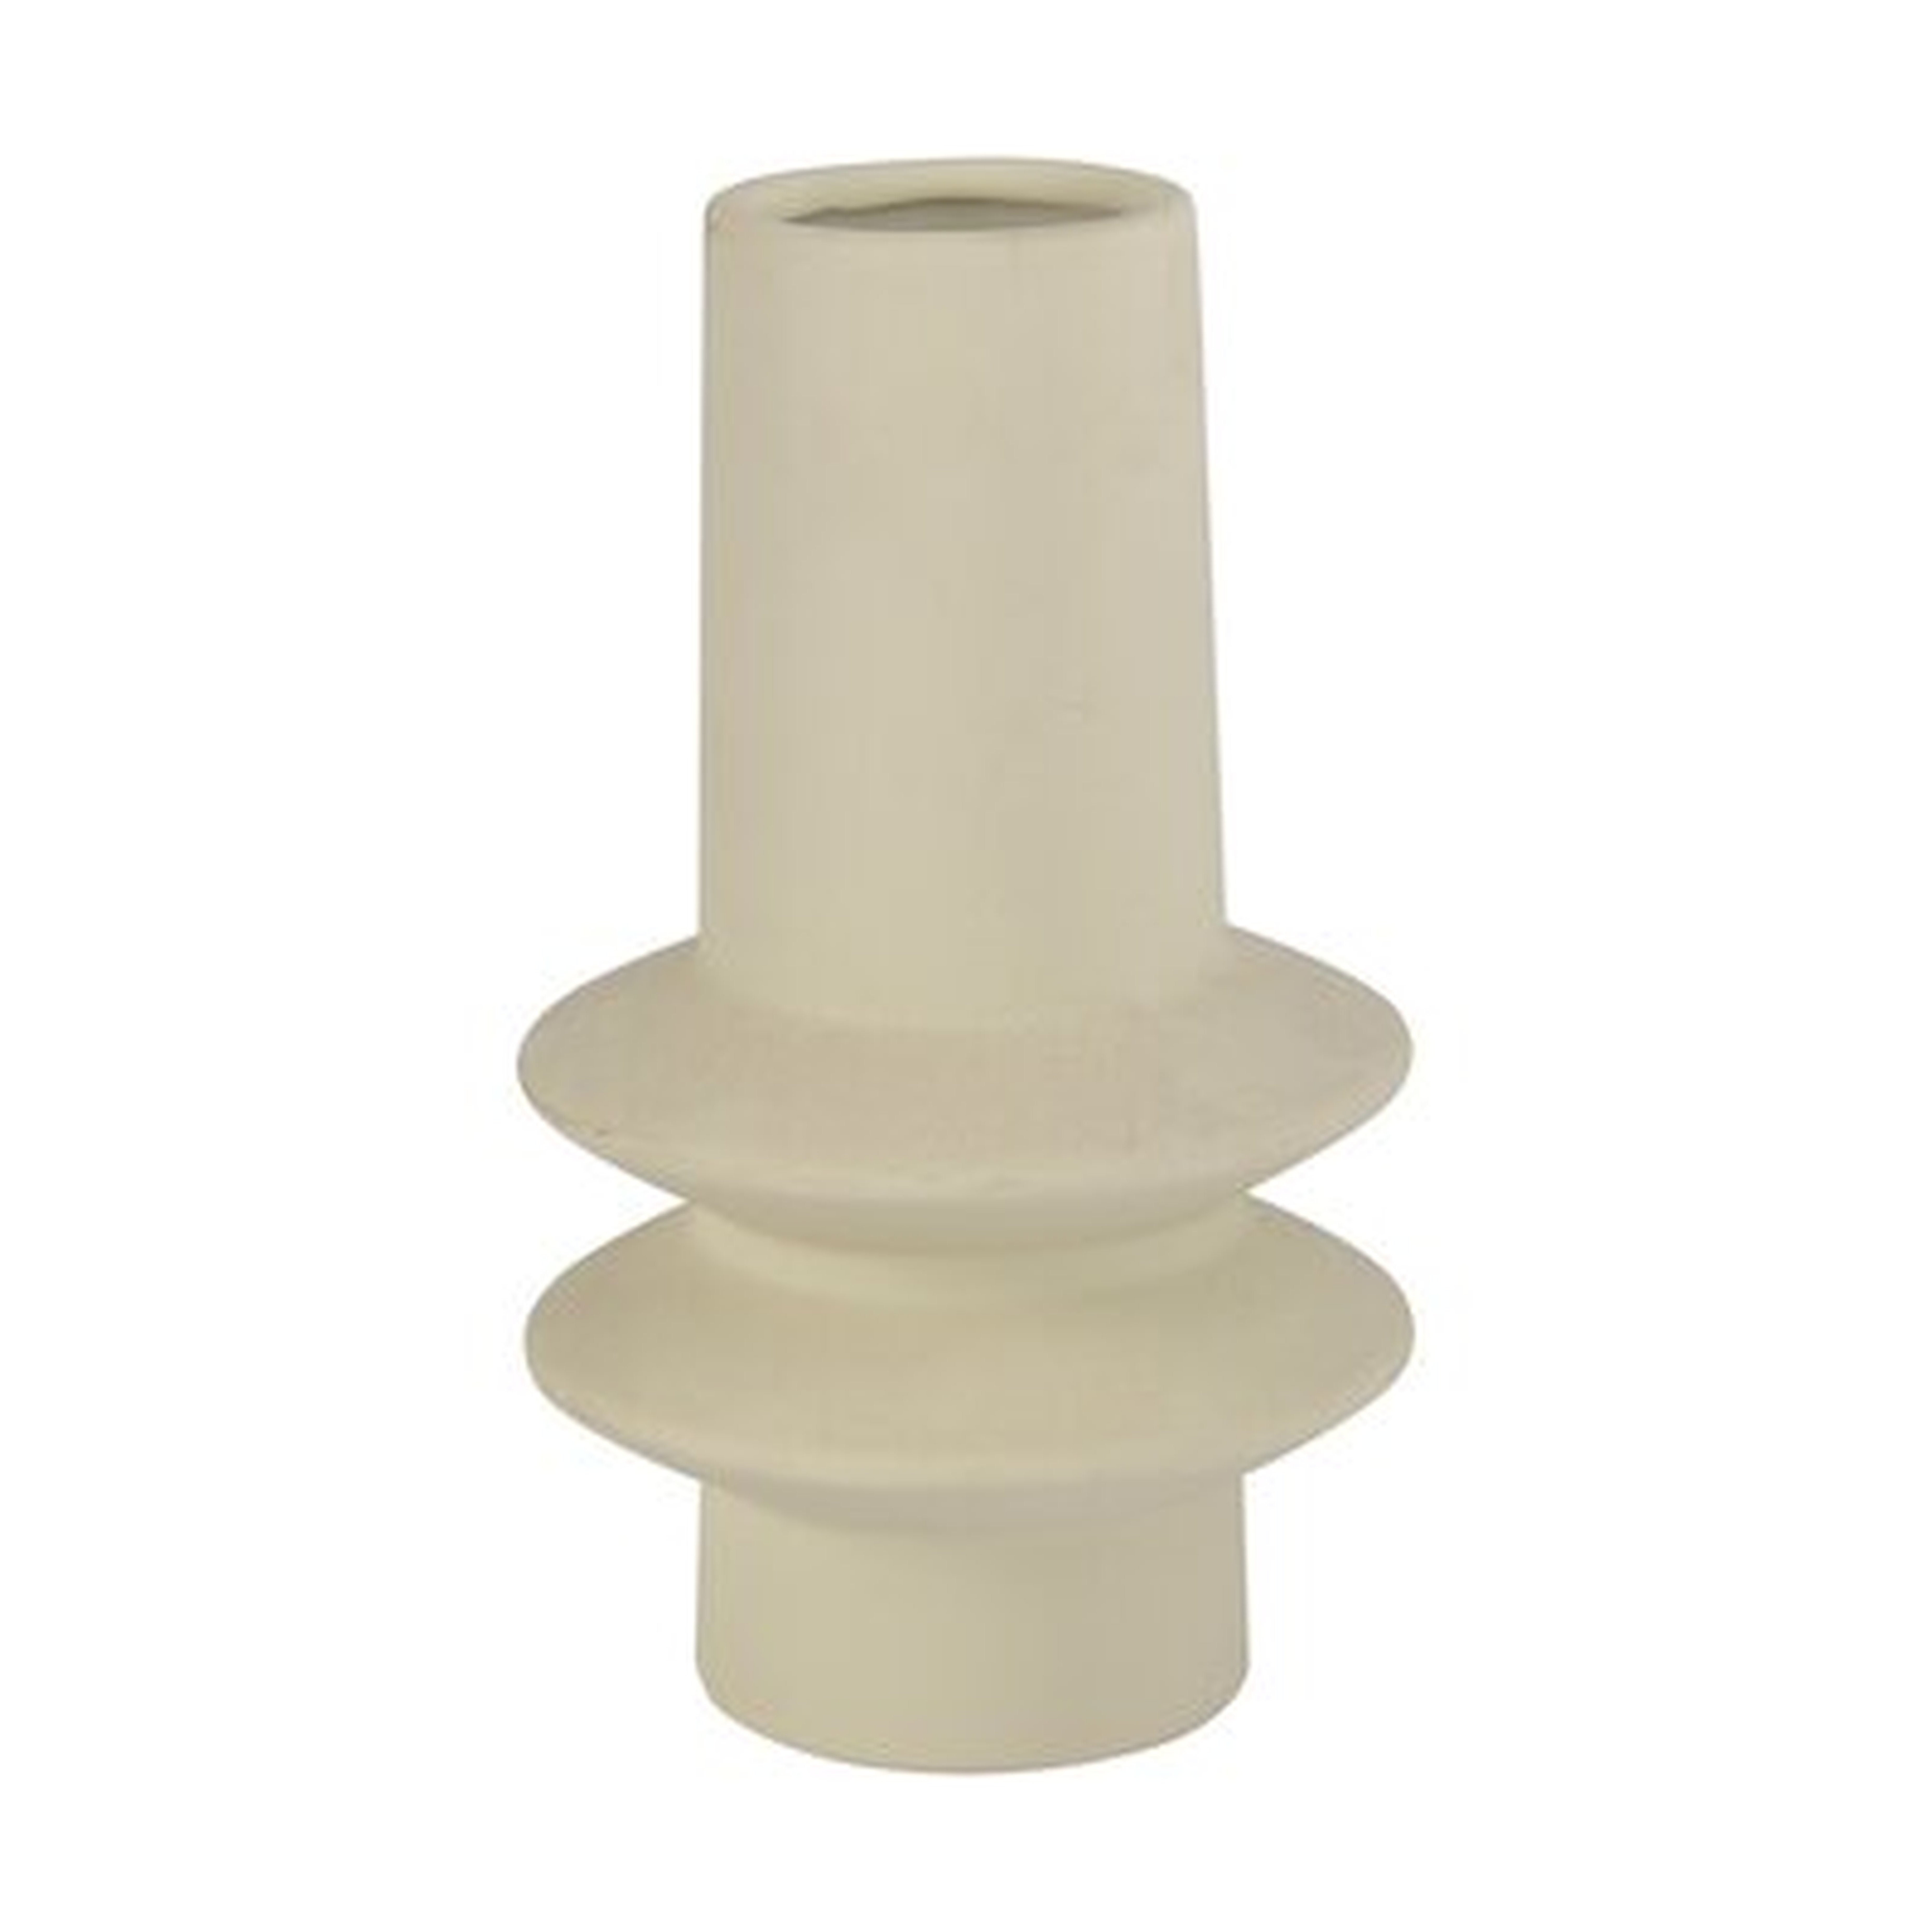 Cream 8.5" Ceramic Table Vase - Wayfair